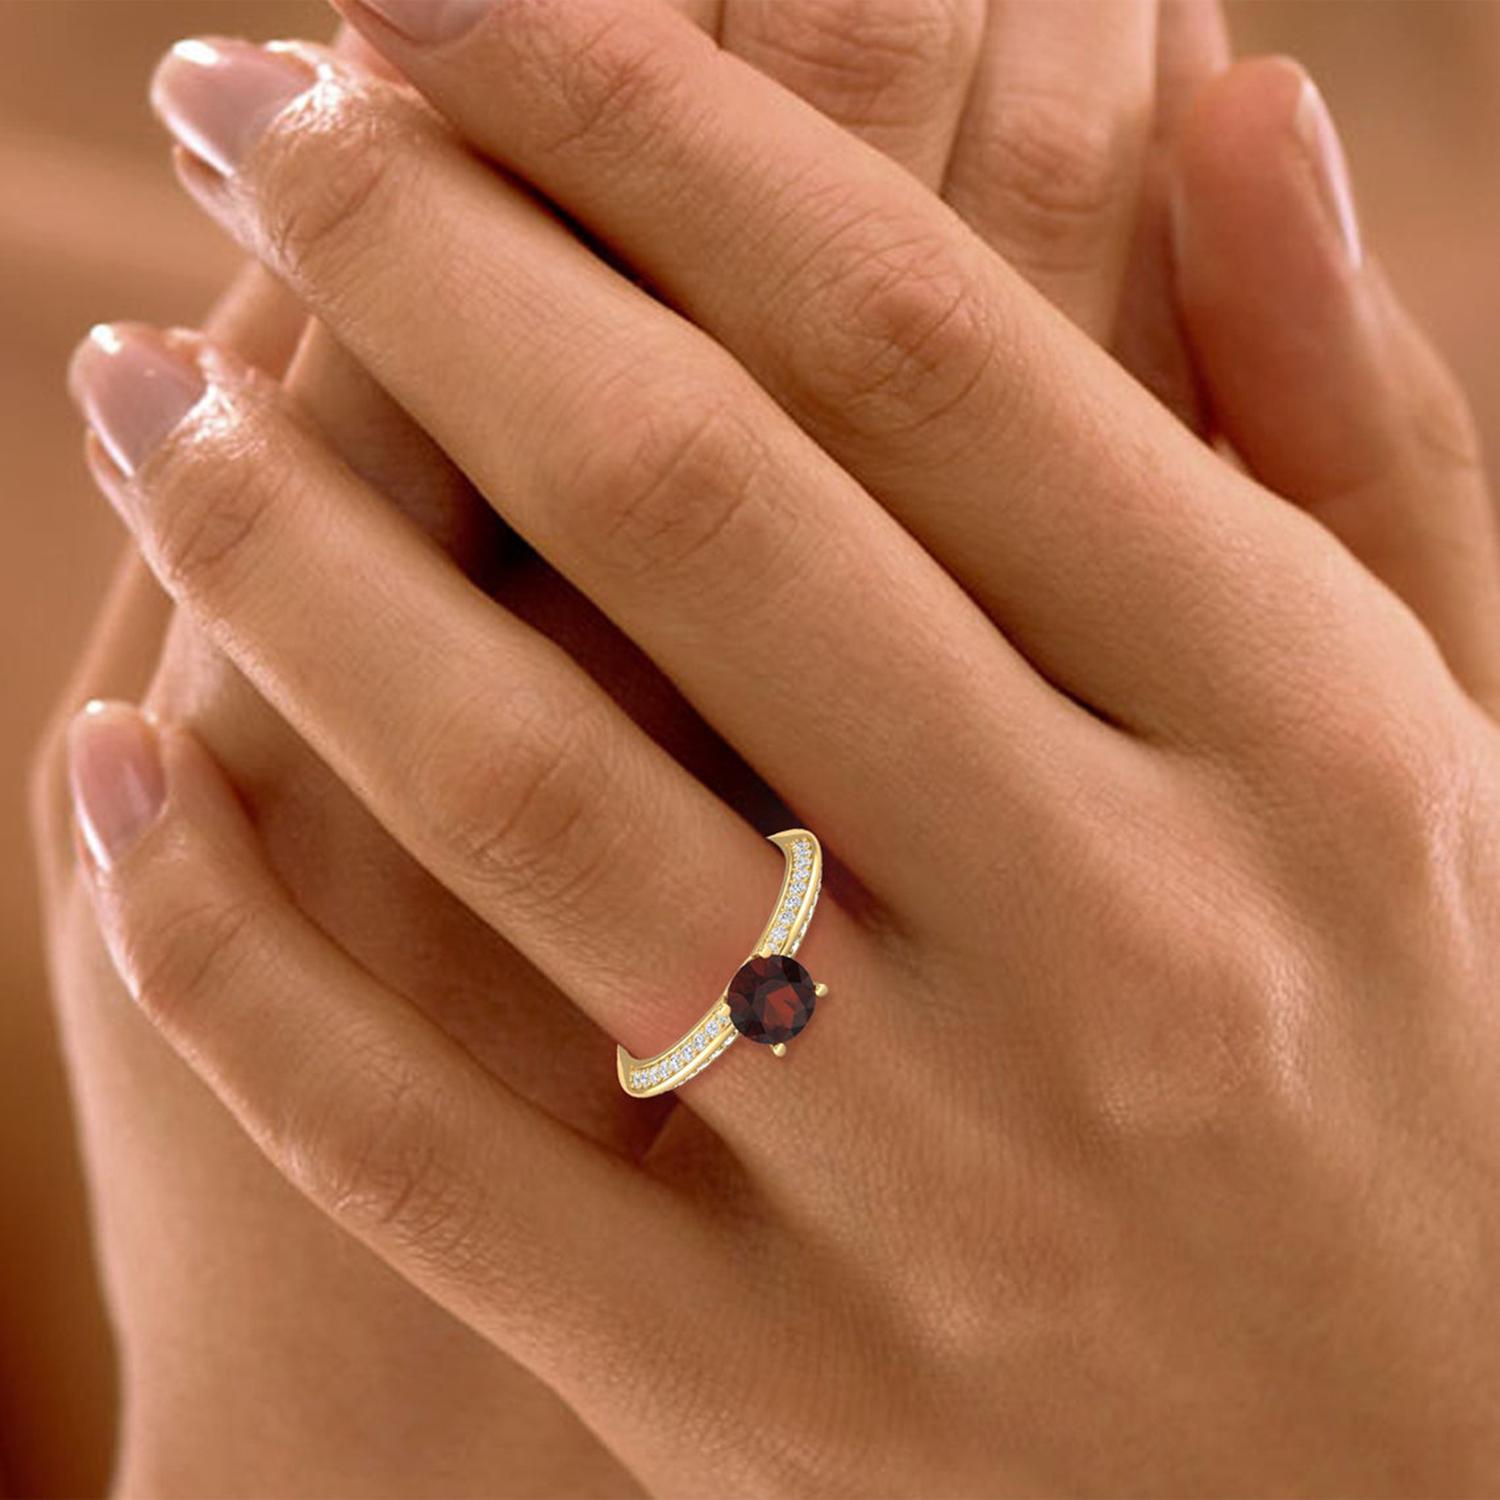 Women's 14 K Gold Orange Garnet Ring / Diamond Solitaire Ring / Engagement Ring for Her For Sale